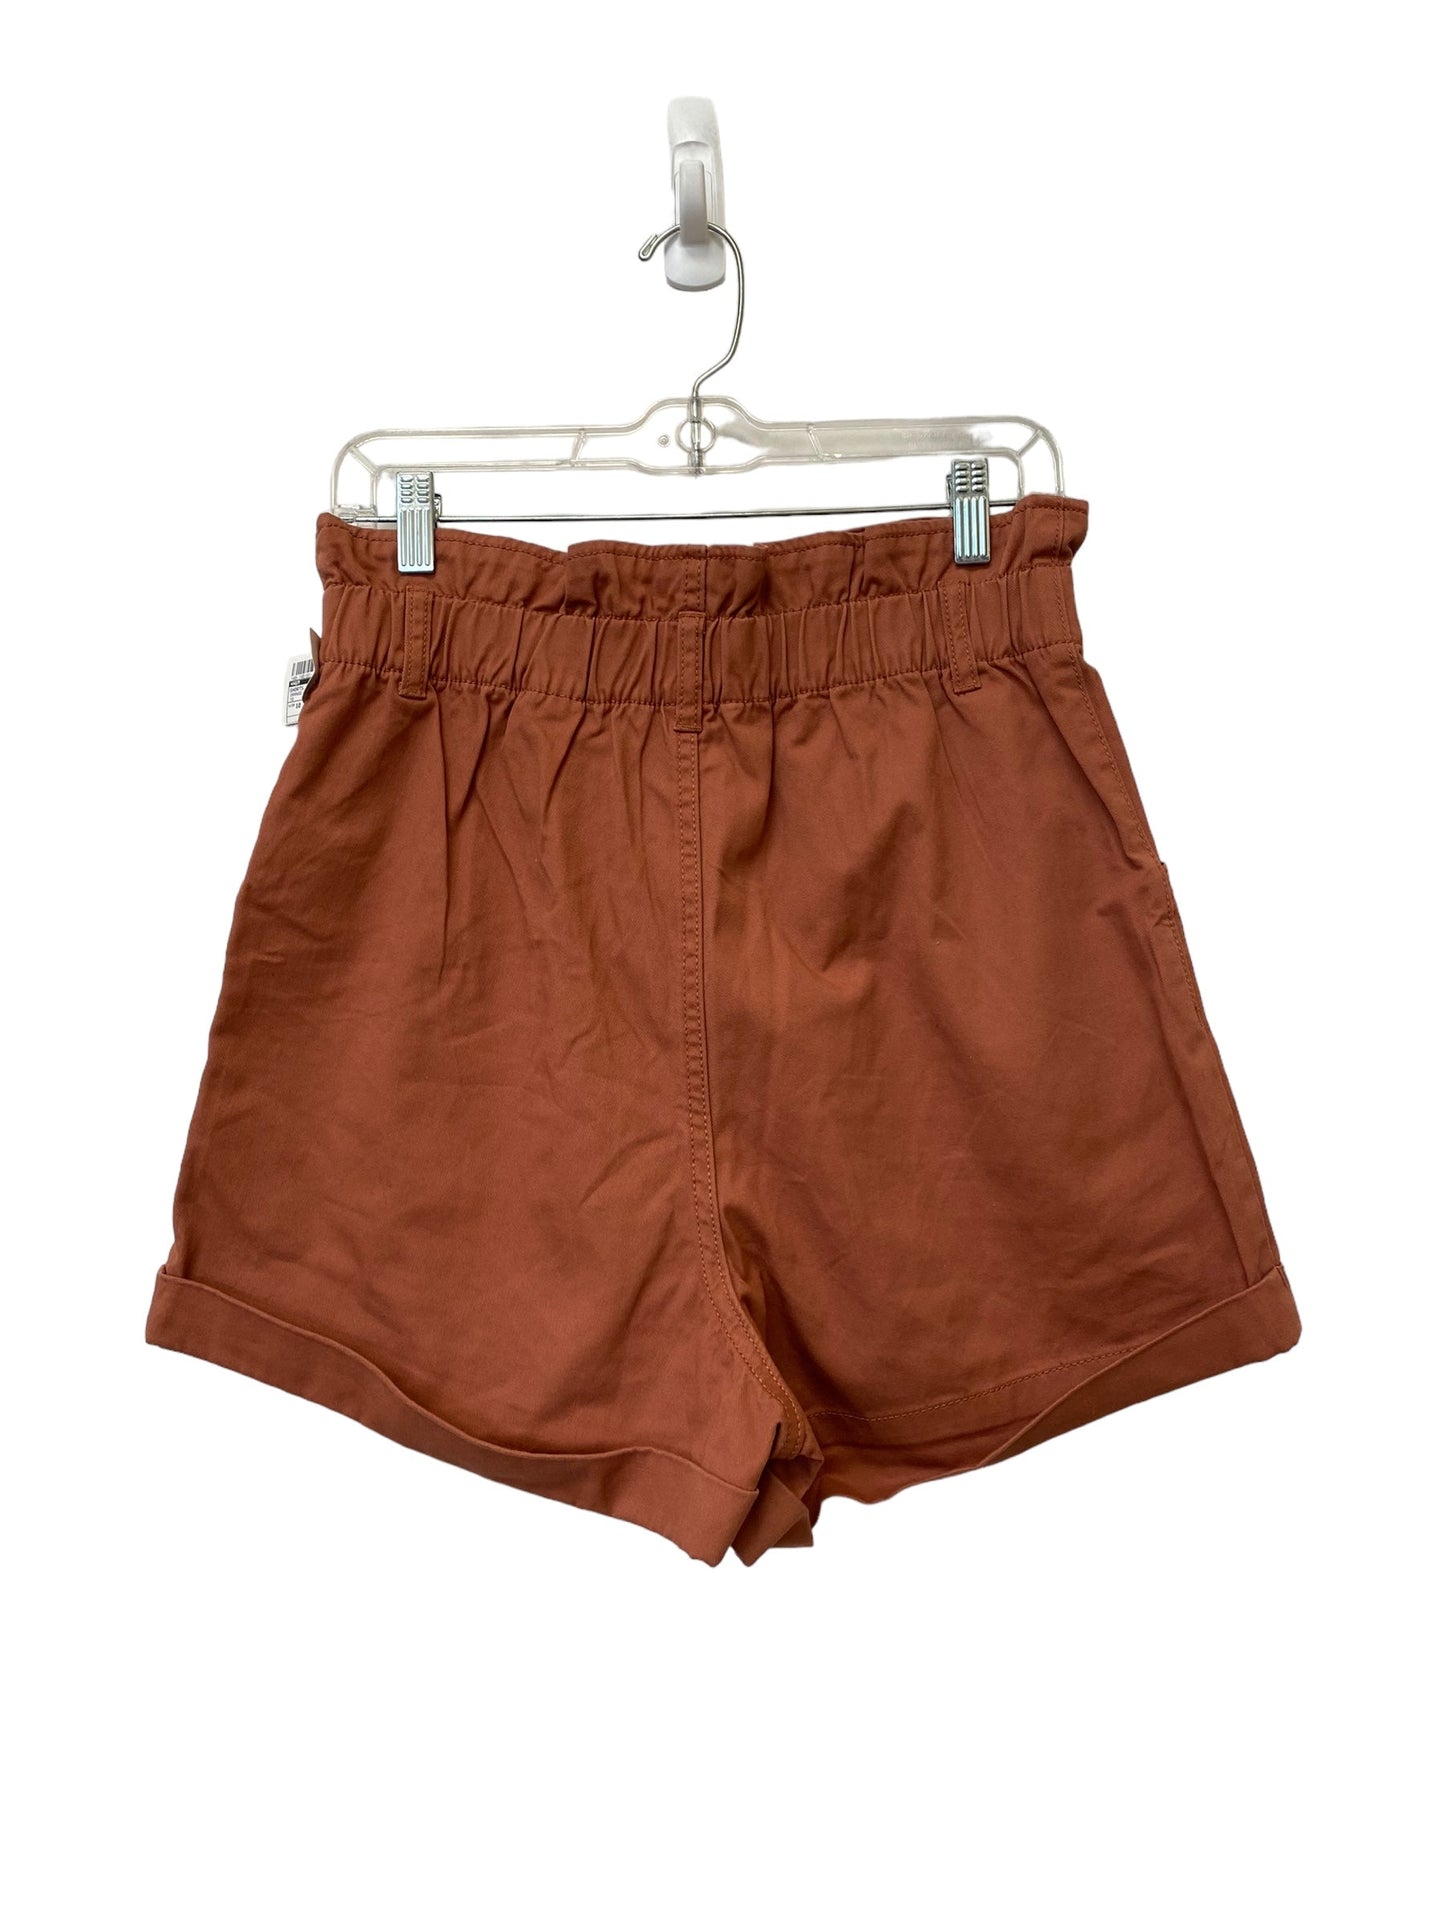 Orange Shorts H&m, Size 10